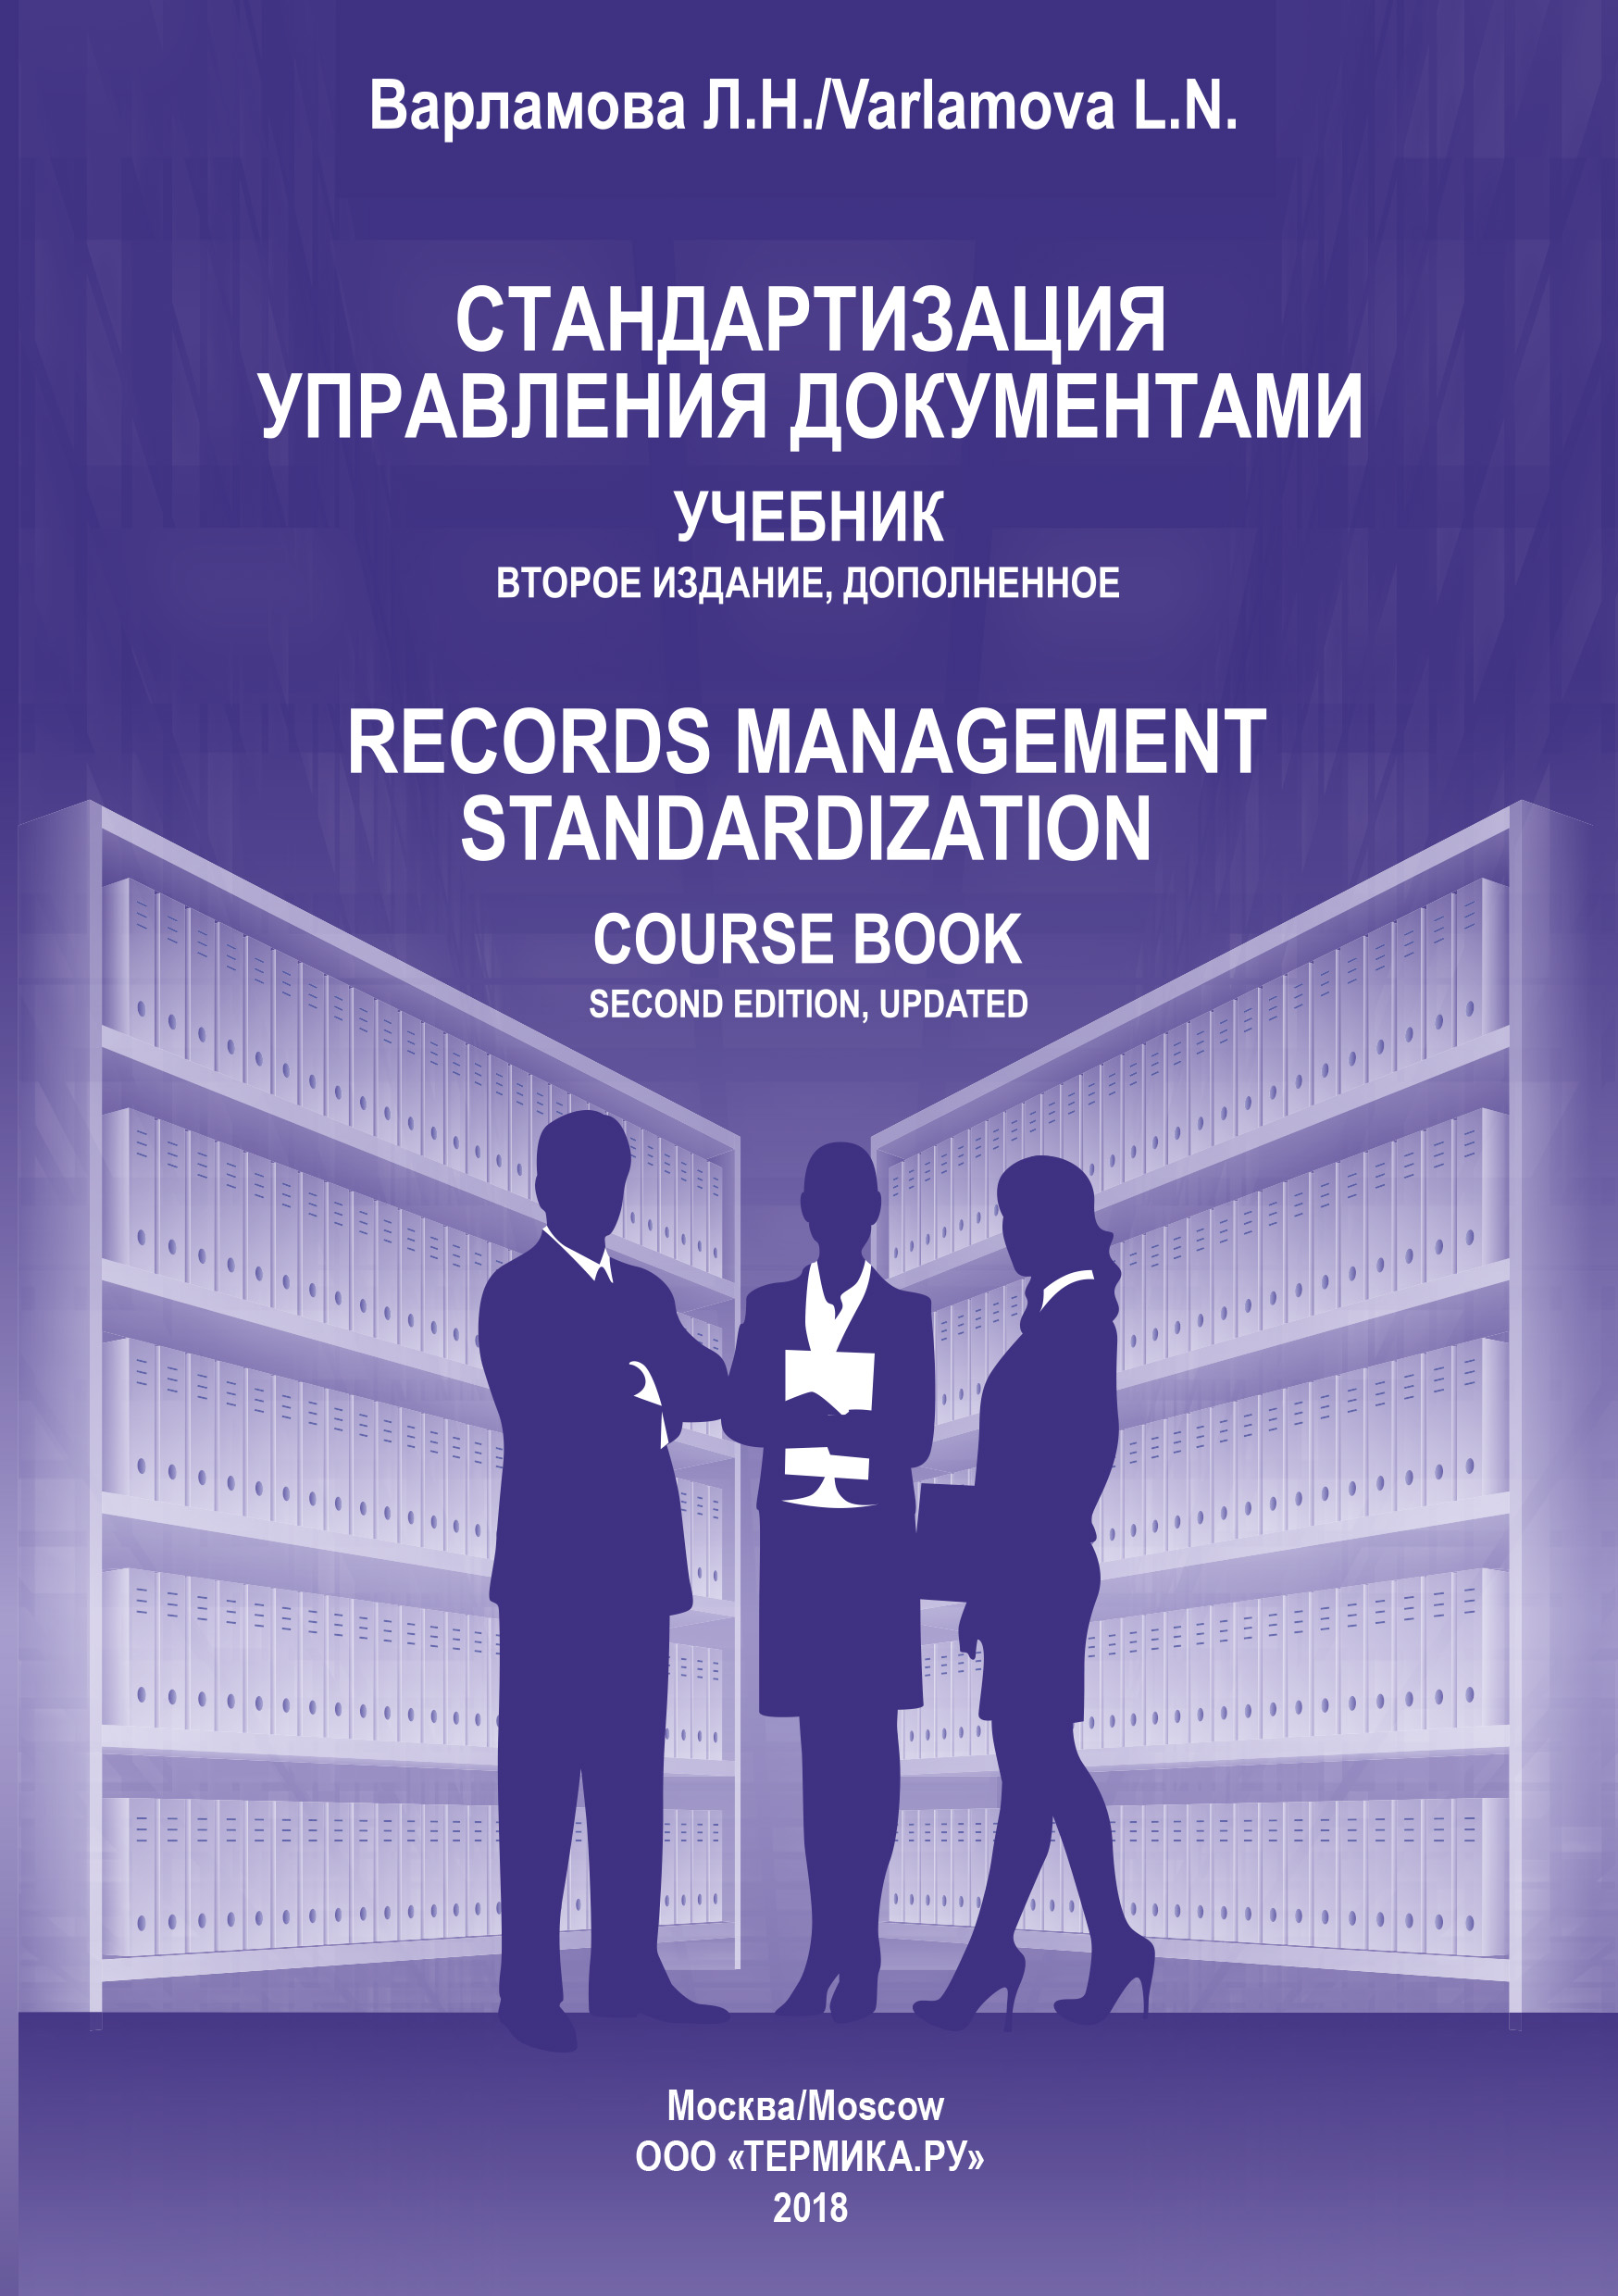 Книга  Стандартизация управления документами созданная Л. Н. Варламова может относится к жанру делопроизводство, учебники и пособия для вузов. Стоимость электронной книги Стандартизация управления документами с идентификатором 22357377 составляет 299.00 руб.